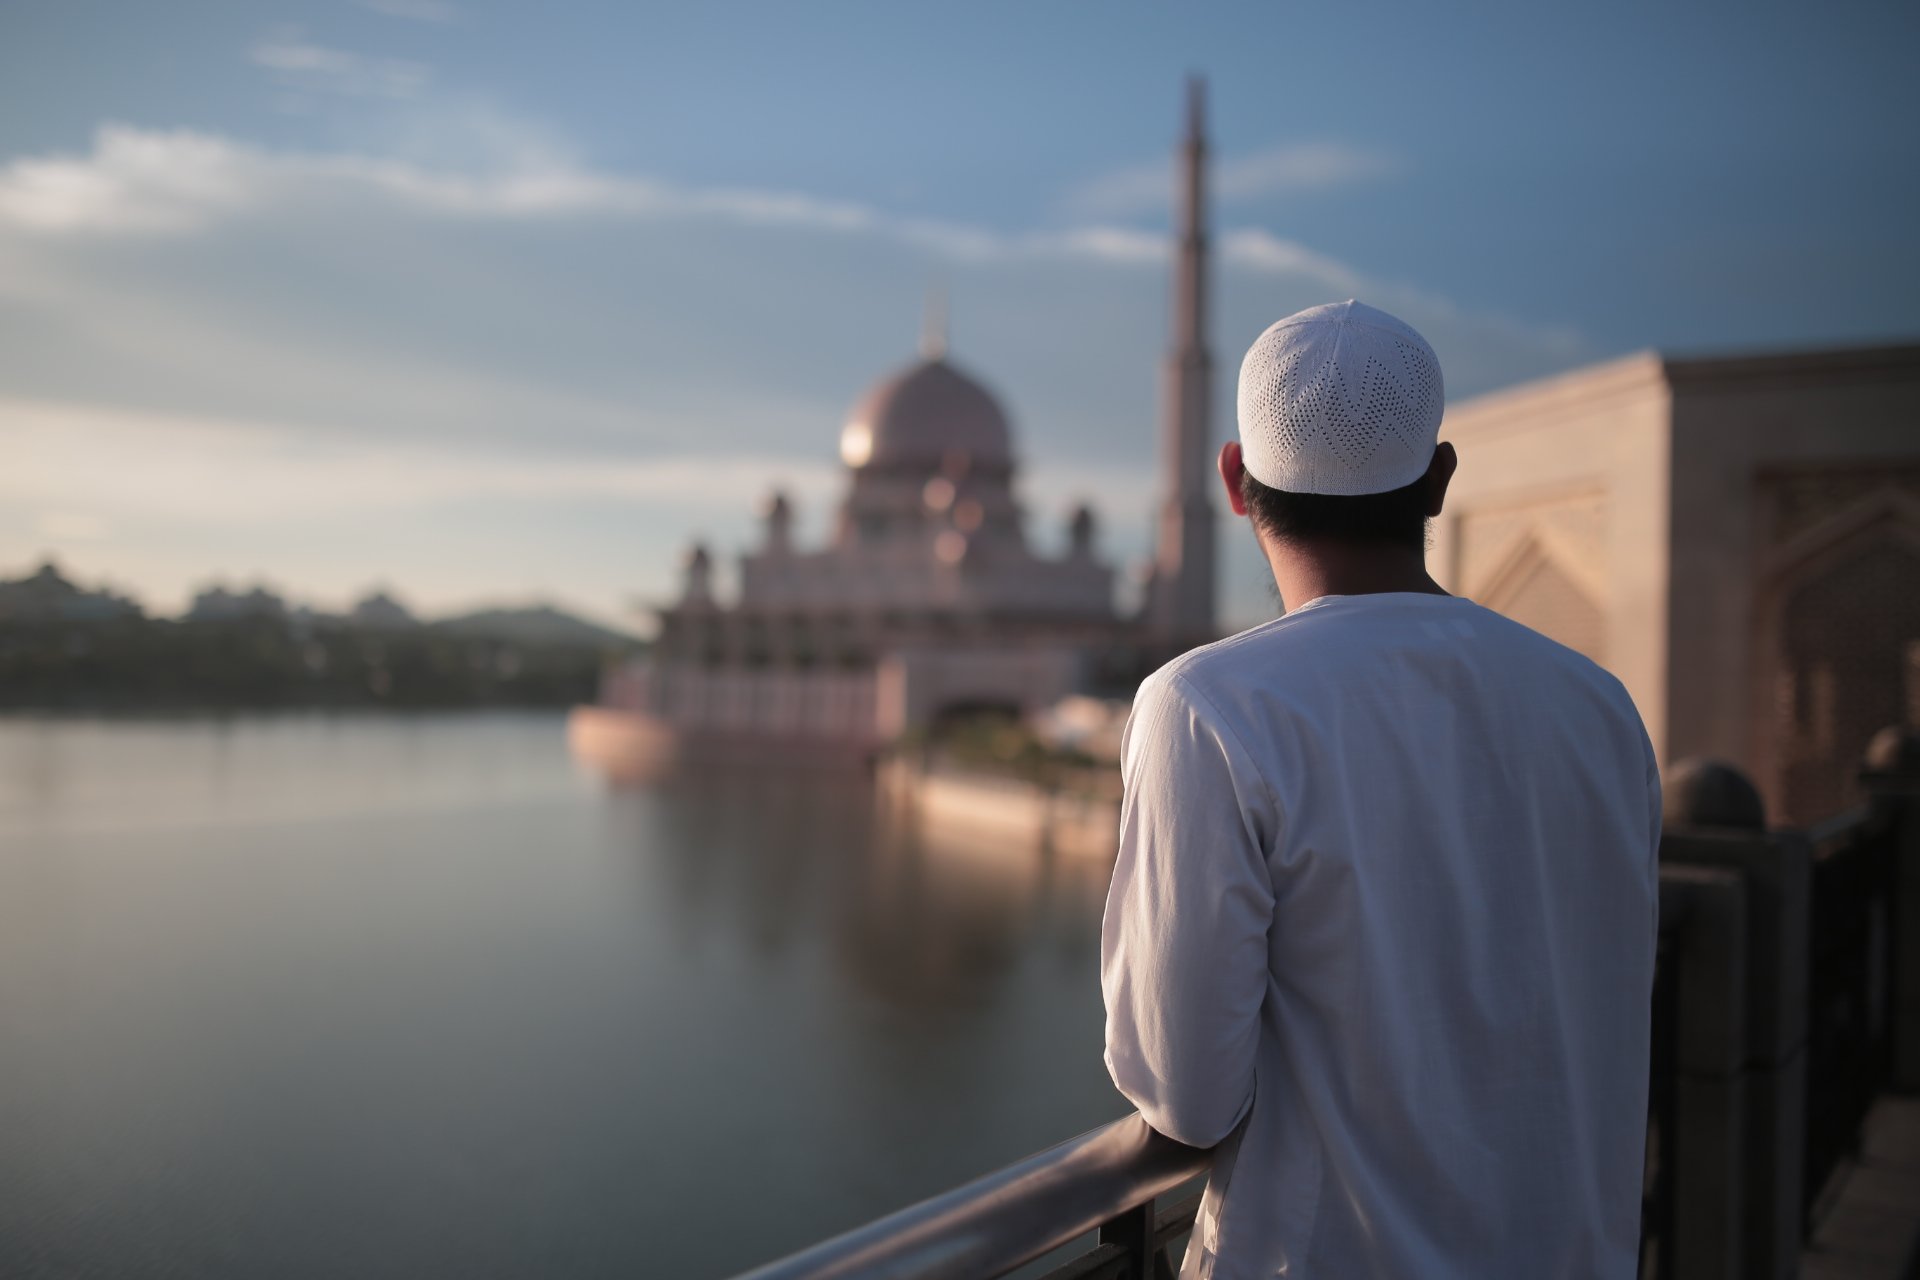 "Tawar Hati Nak Jemaah Di Masjid Sebab.." - Lelaki Luah Tentang Masalah Suasana 10